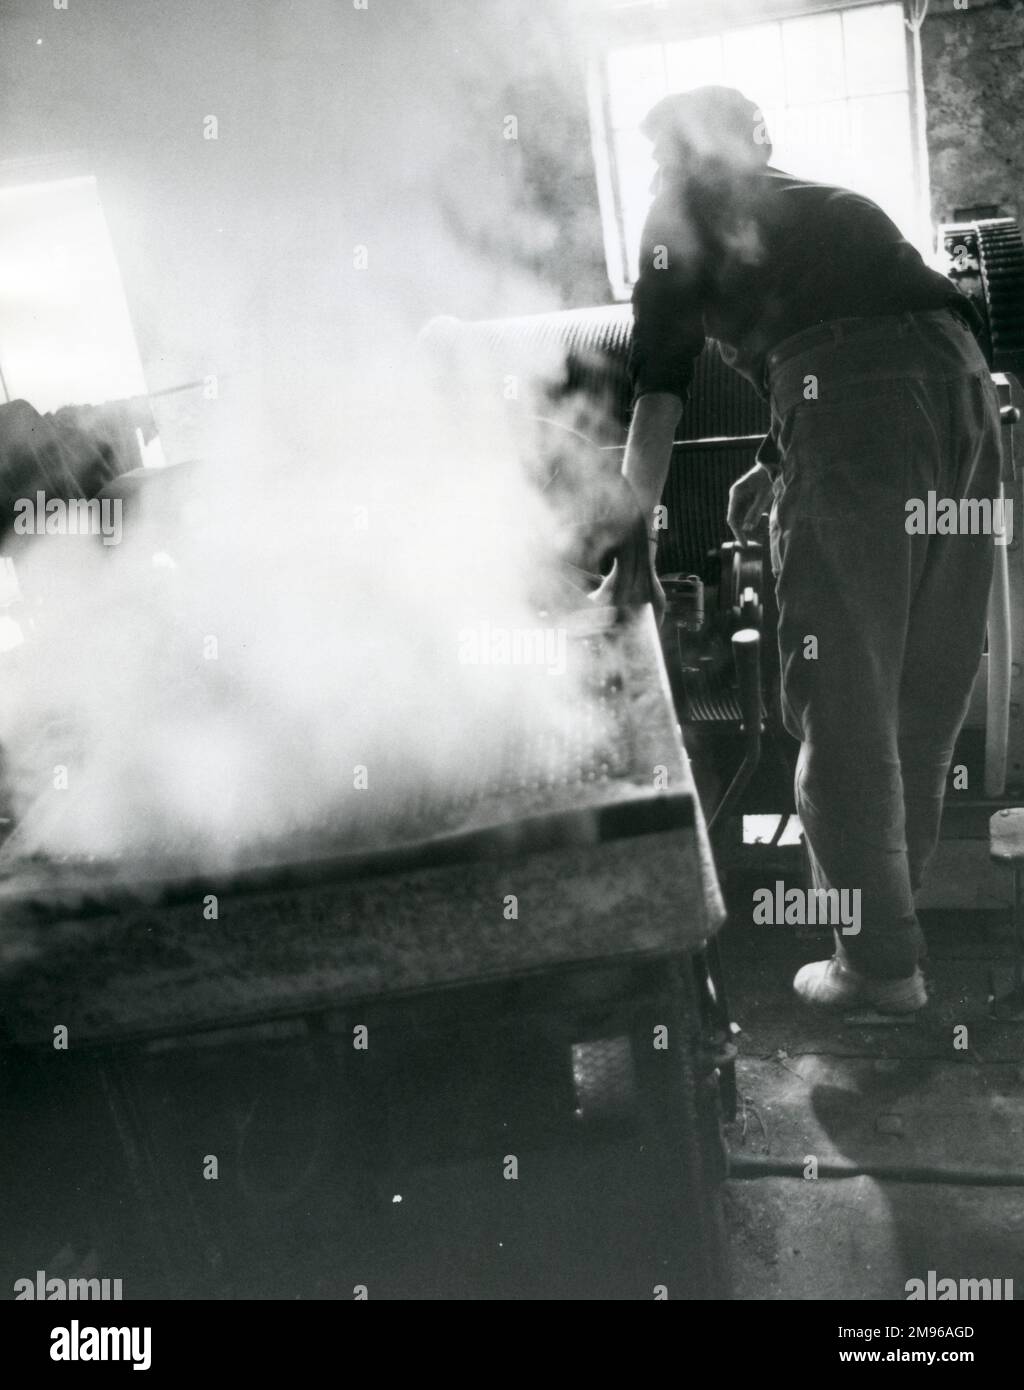 Un Winder Blondin au travail, à Penyrorsedd Slate Quarry, Nantlle Valley, Caernarvonshire (aujourd'hui Gwynedd), au nord du pays de Galles. Le Blondin est un système de chariot à fils haut utilisé pour déplacer l'ardoise vers le haut ou à travers la fosse, comme indiqué par l'observateur. Dans les anciens jours, les Blondins étaient actionnés à la vapeur, mais la vapeur dans cette photo provient du refroidissement par eau de la résistance du moteur électrique. Banque D'Images